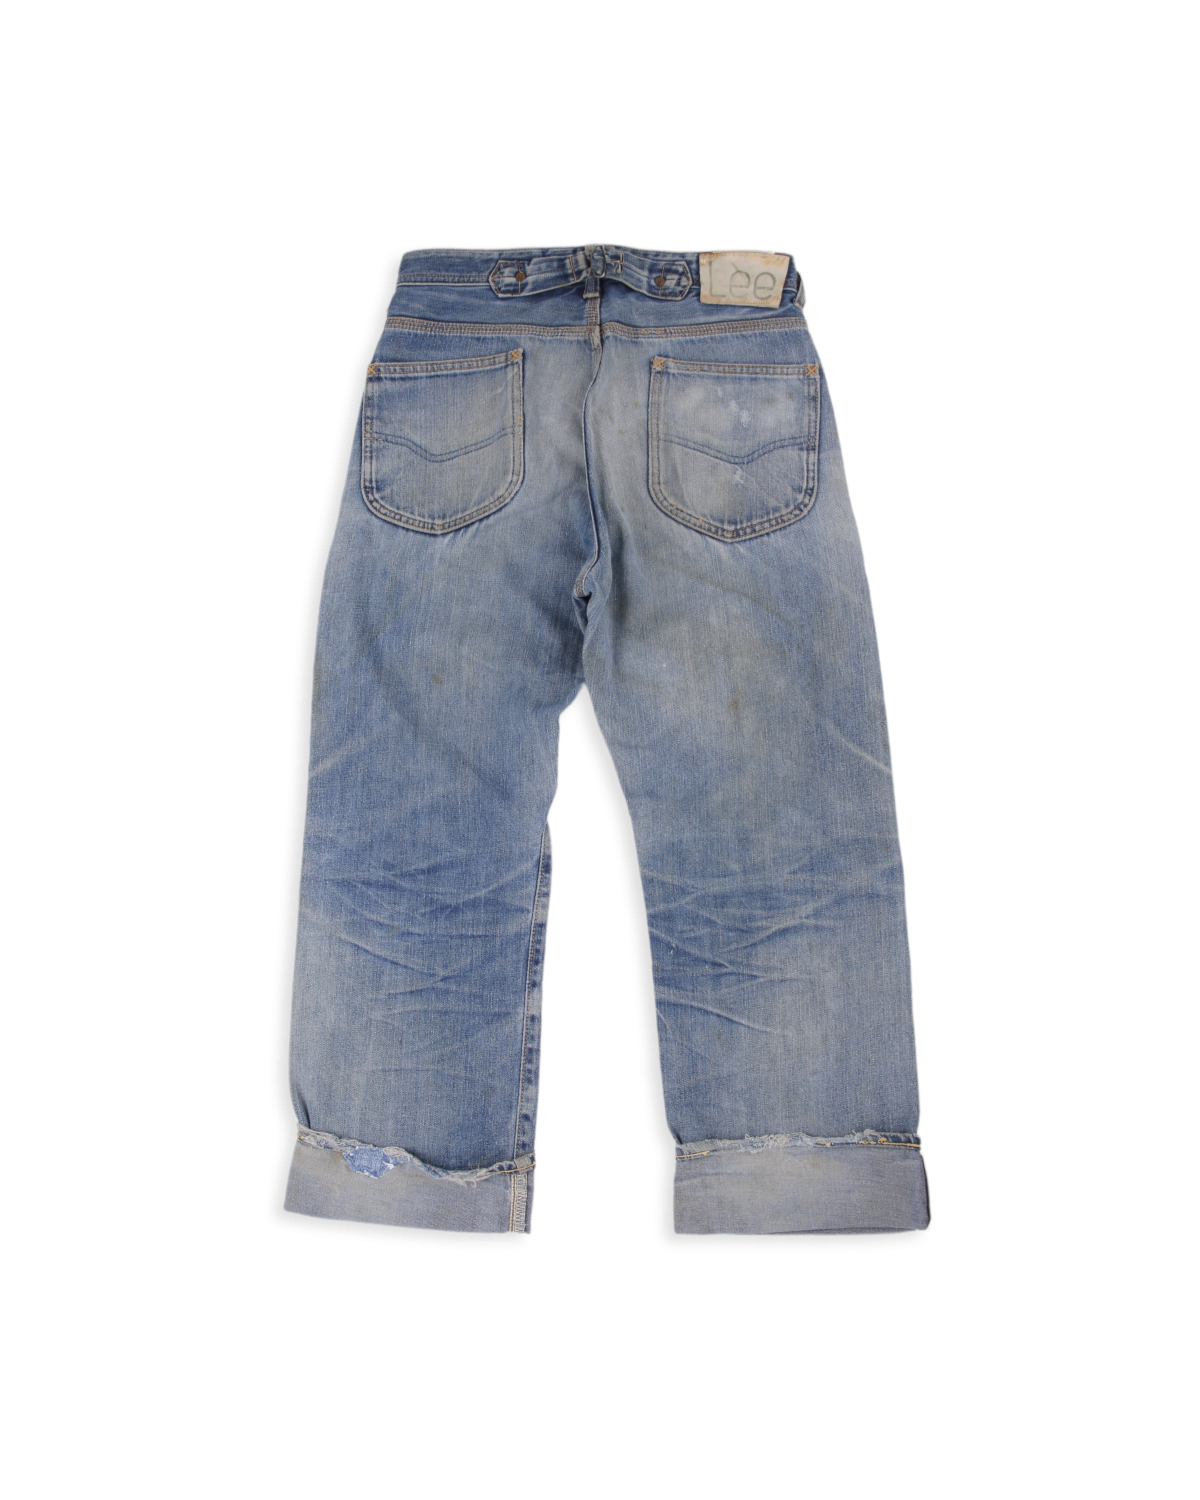 LEE JEANS- Organic Cotton Denim Jeans- Man- 30 - Blue | Lee jeans, Denim  jeans, Denim jeans men